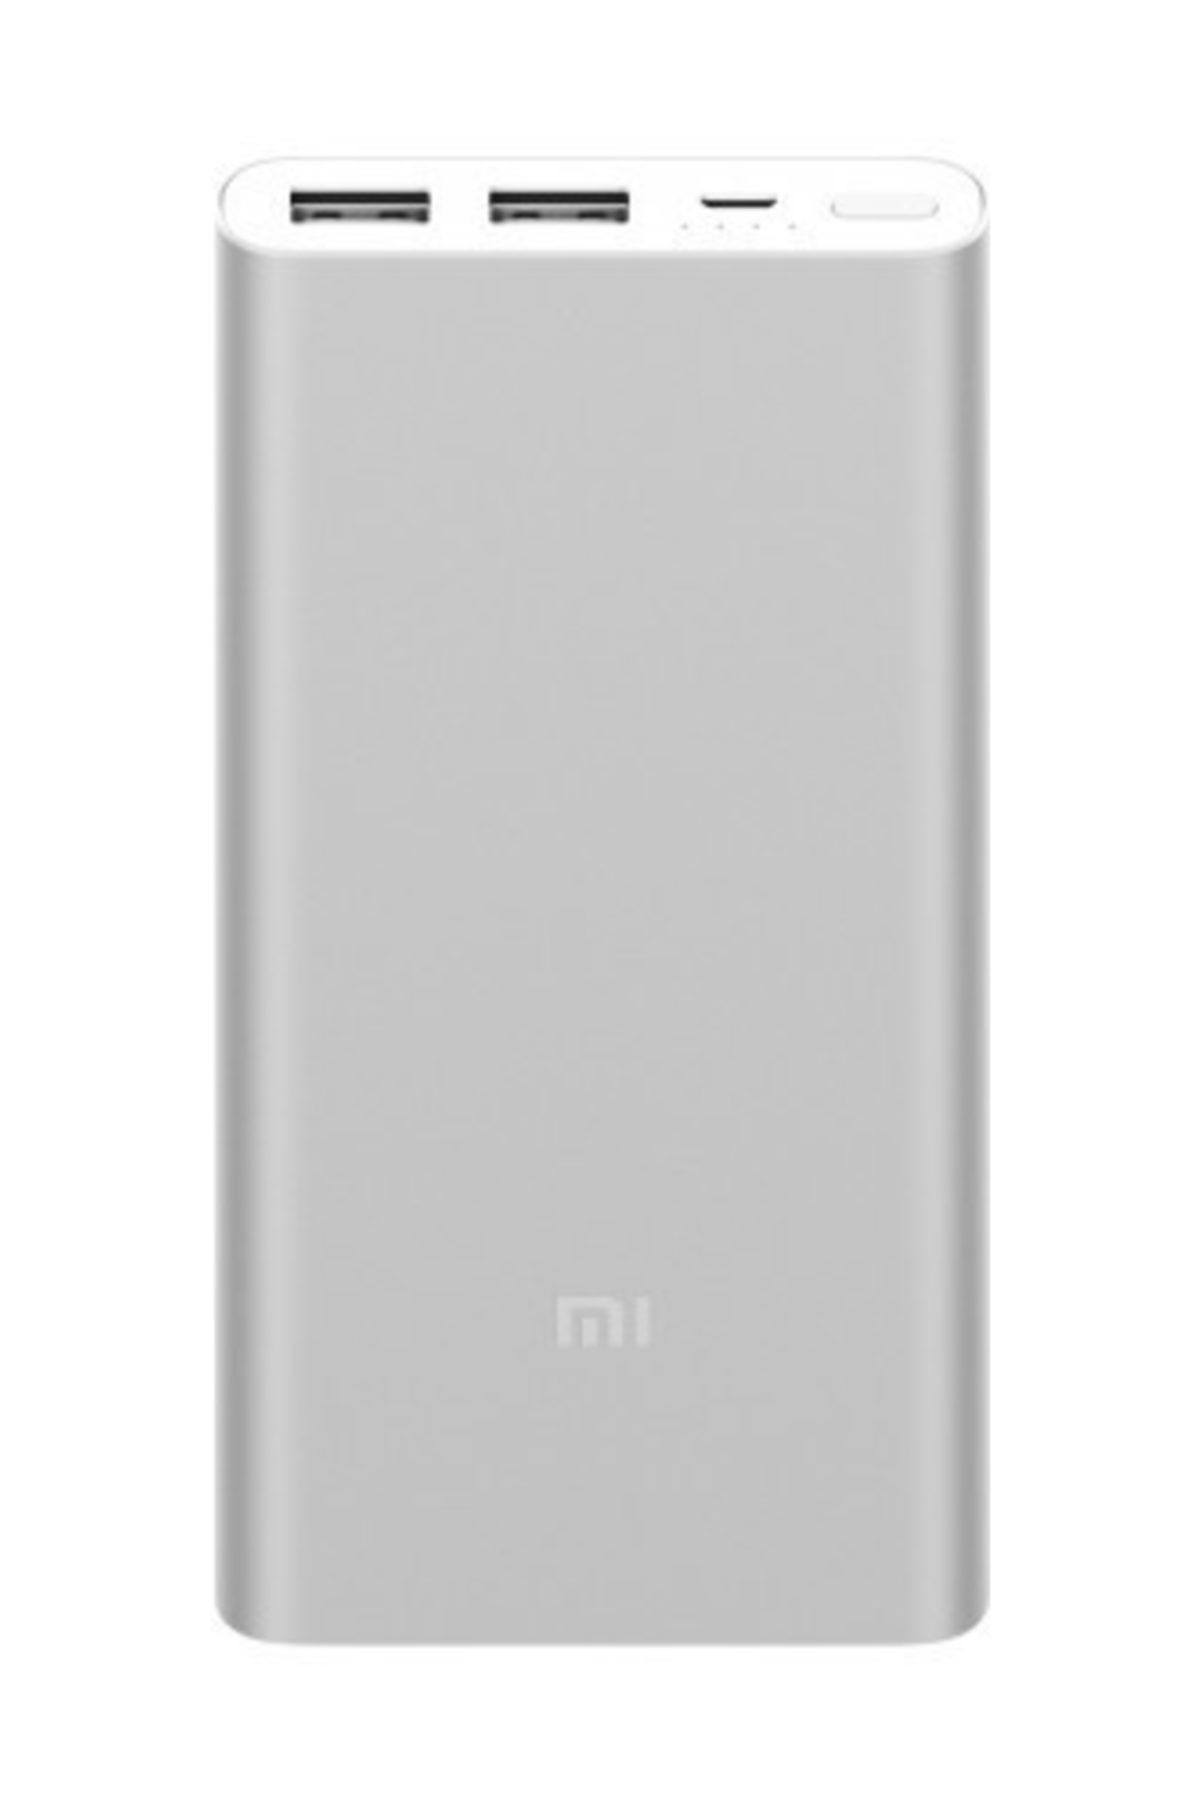 Xiaomi 10000 mAh (Versiyon 3) Taşınabilir Şarj Cihazı Gümüş (İnce ve Hafif Kasa)